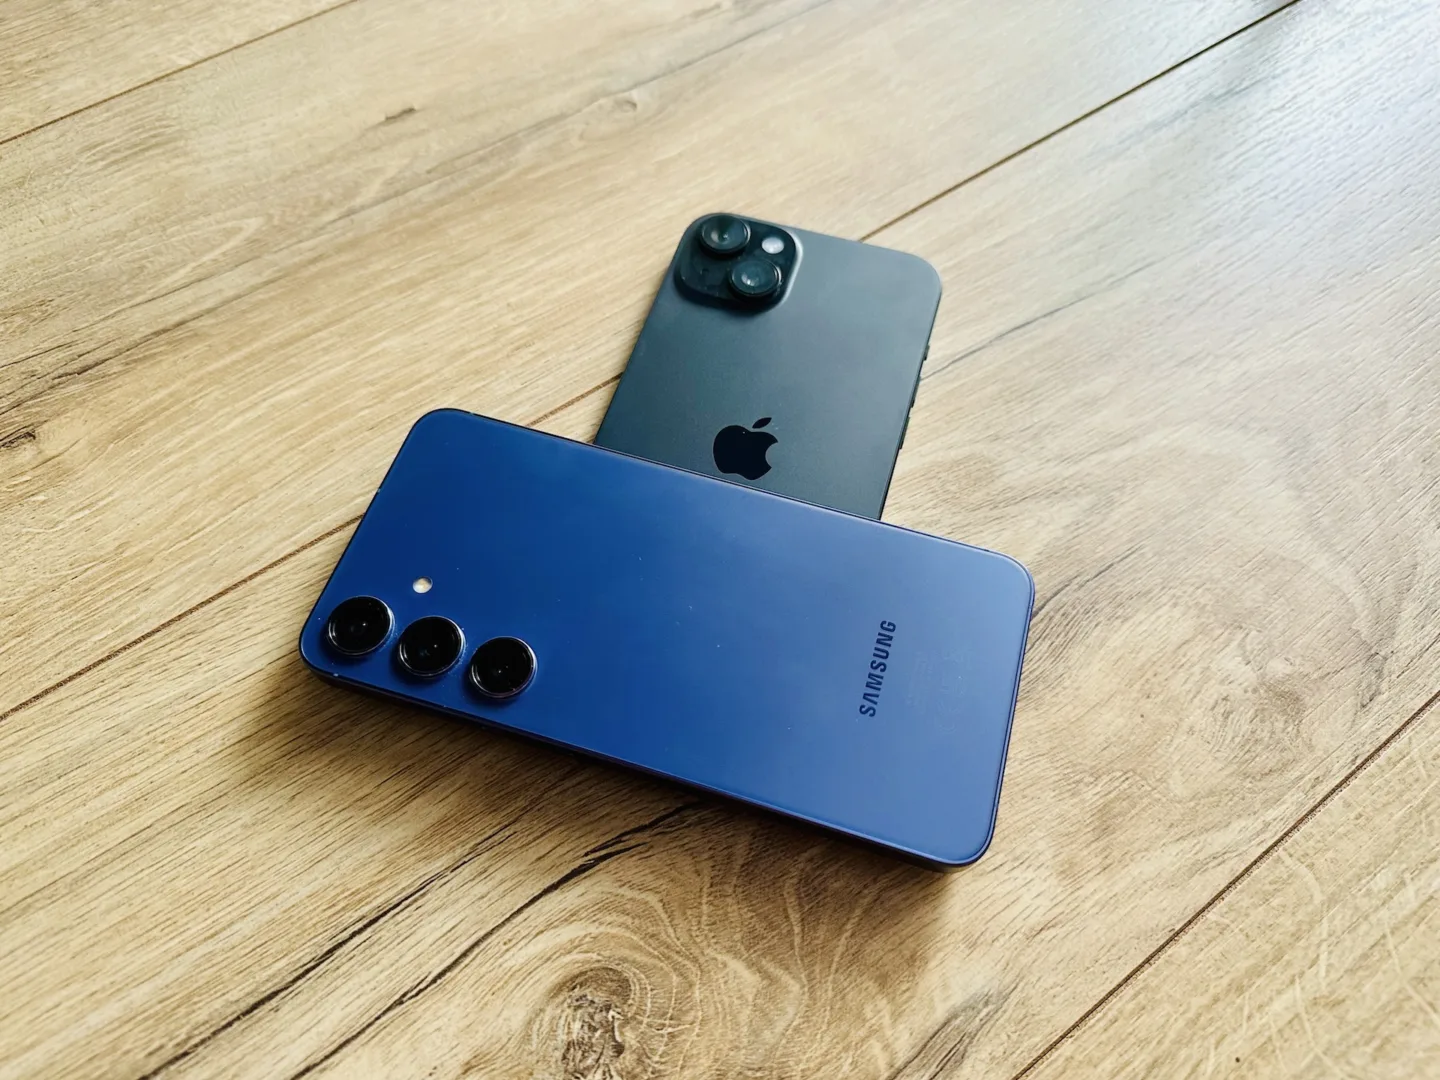 Który smartfon jest lepszy? Galaxy S24+ czy iPhone 15 Plus? Ciężko wybrać faworyta tego porównania.